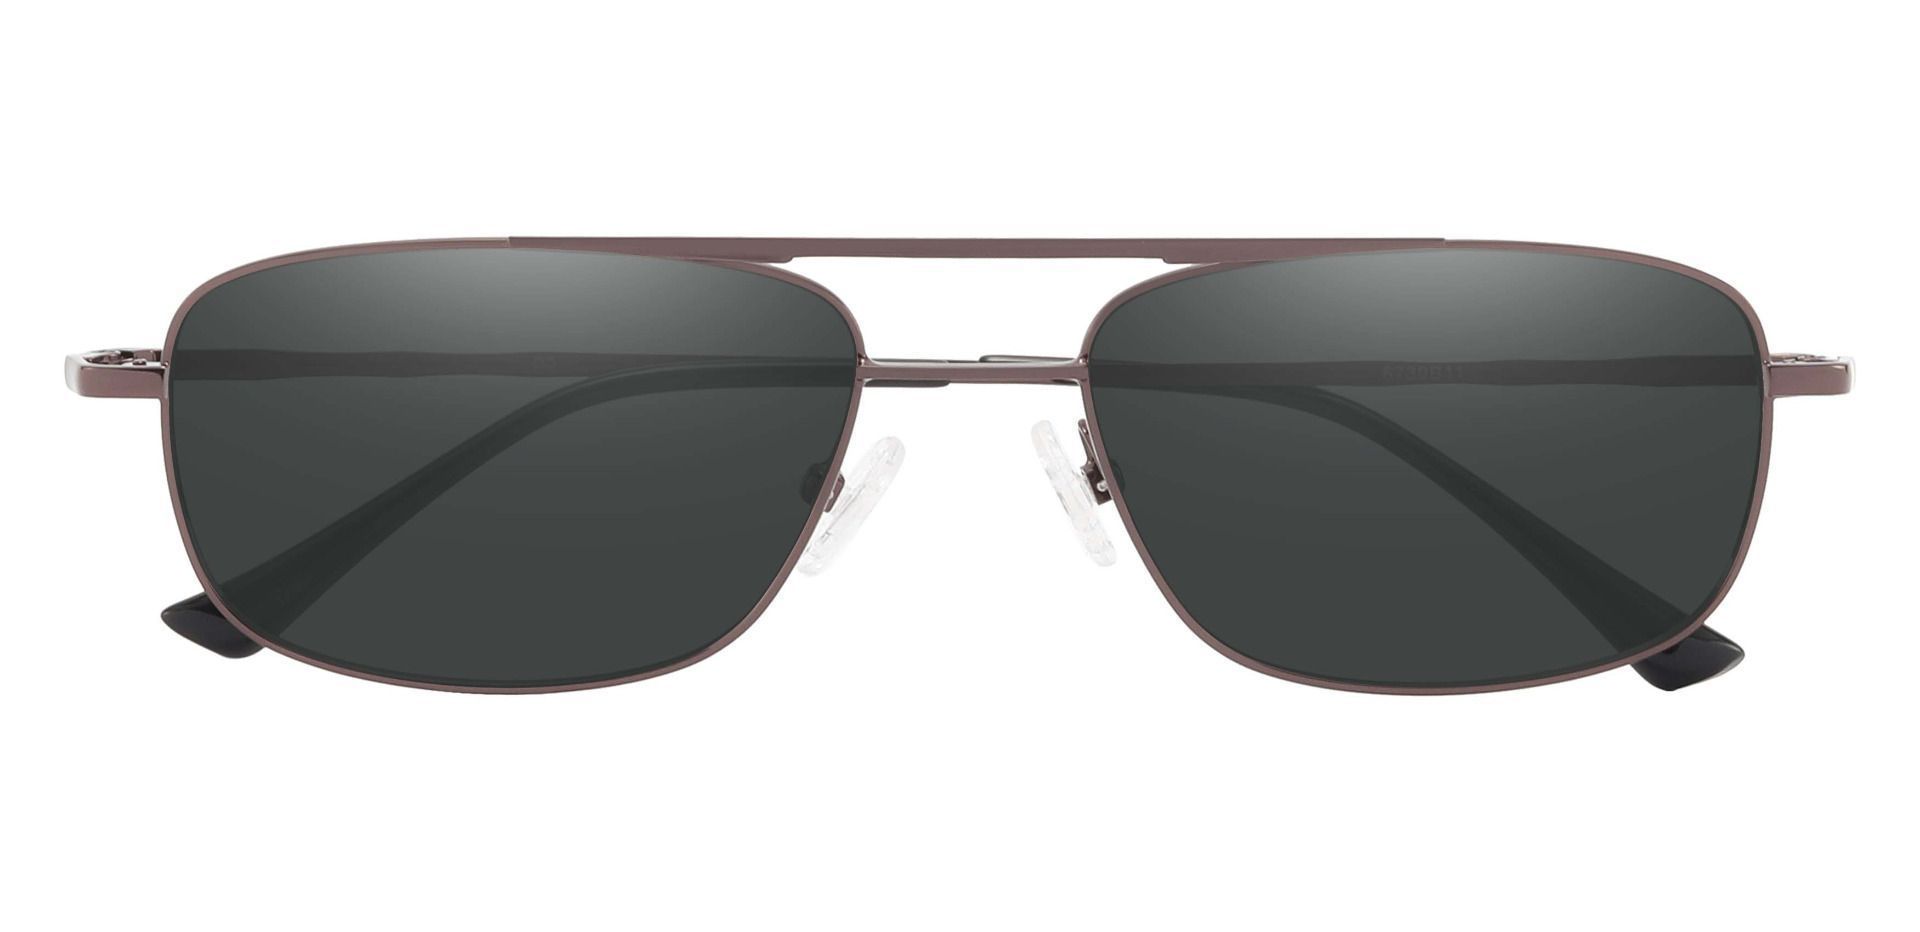 Hugo Aviator Reading Sunglasses - Brown Frame With Gray Lenses